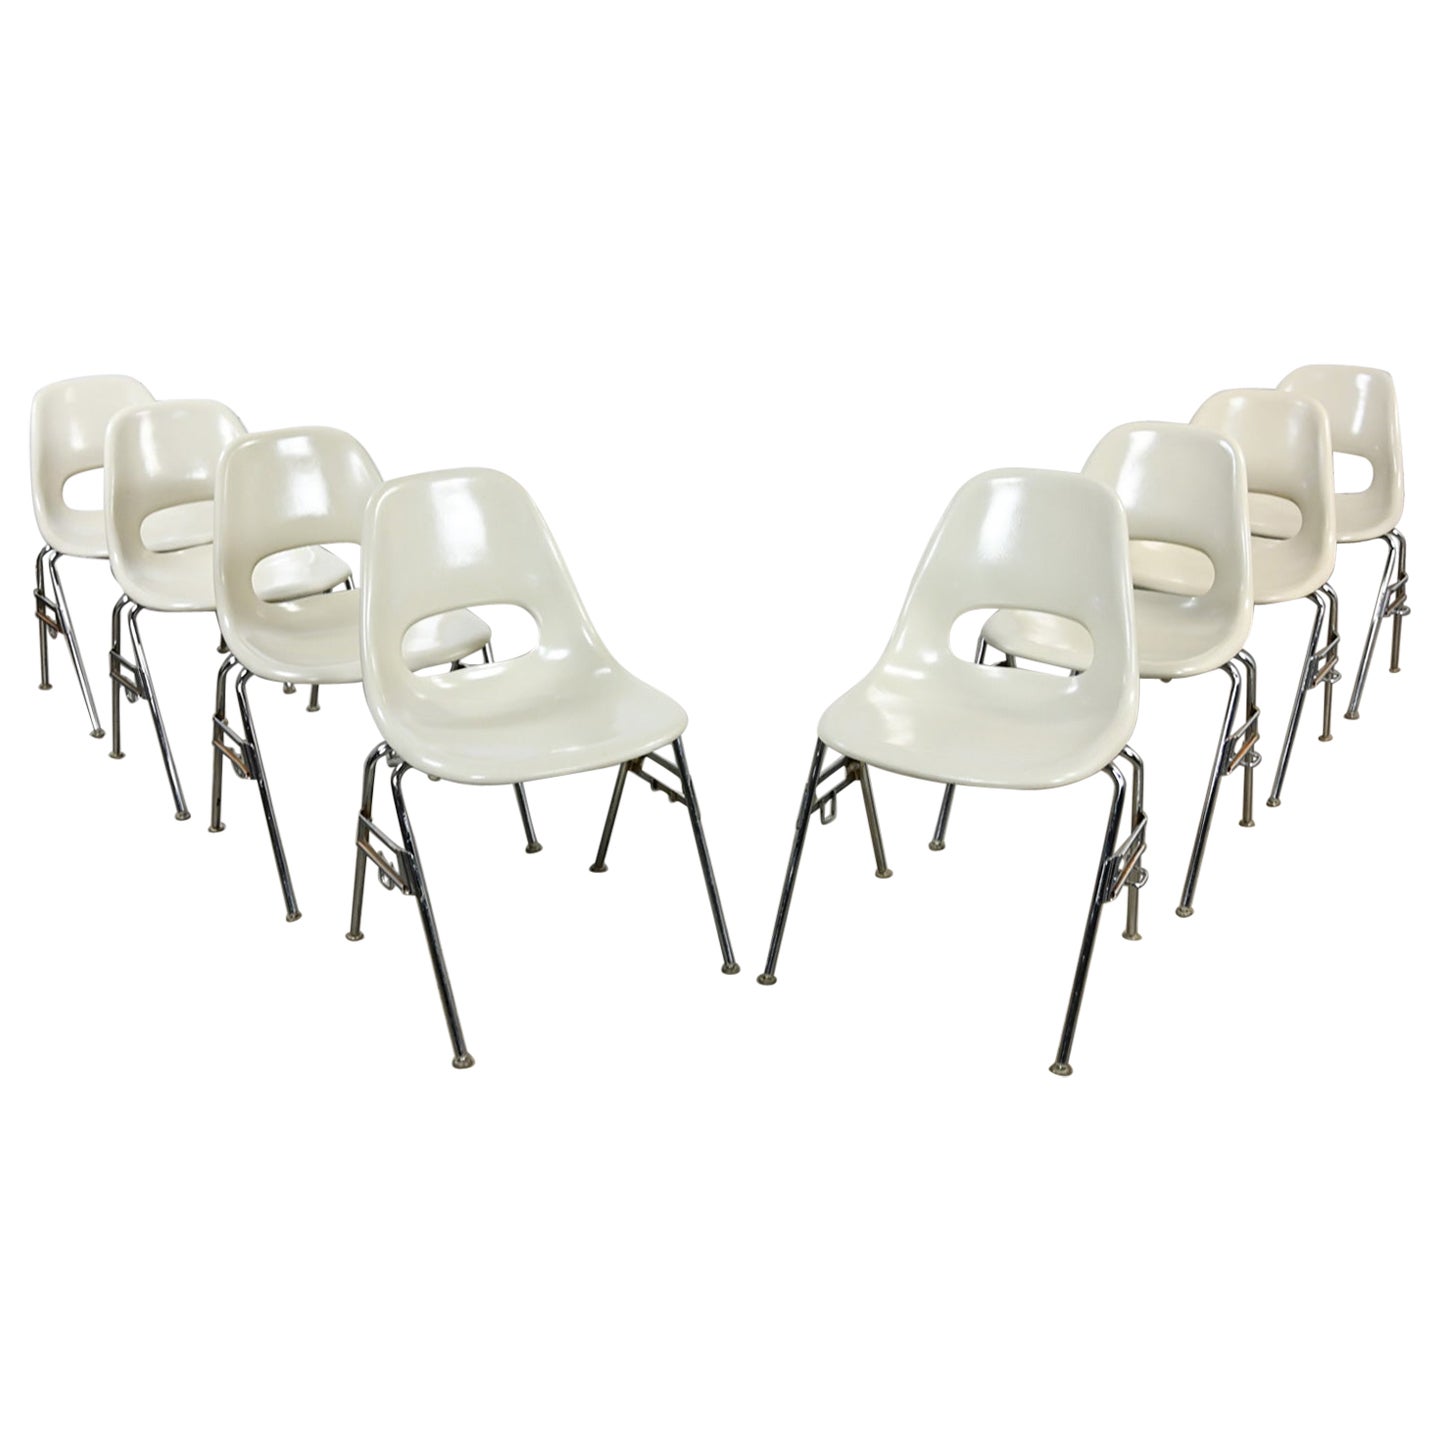 1960-70’s MCM Krueger International White Fiberglass & Chrome Stacking Chairs 8 For Sale